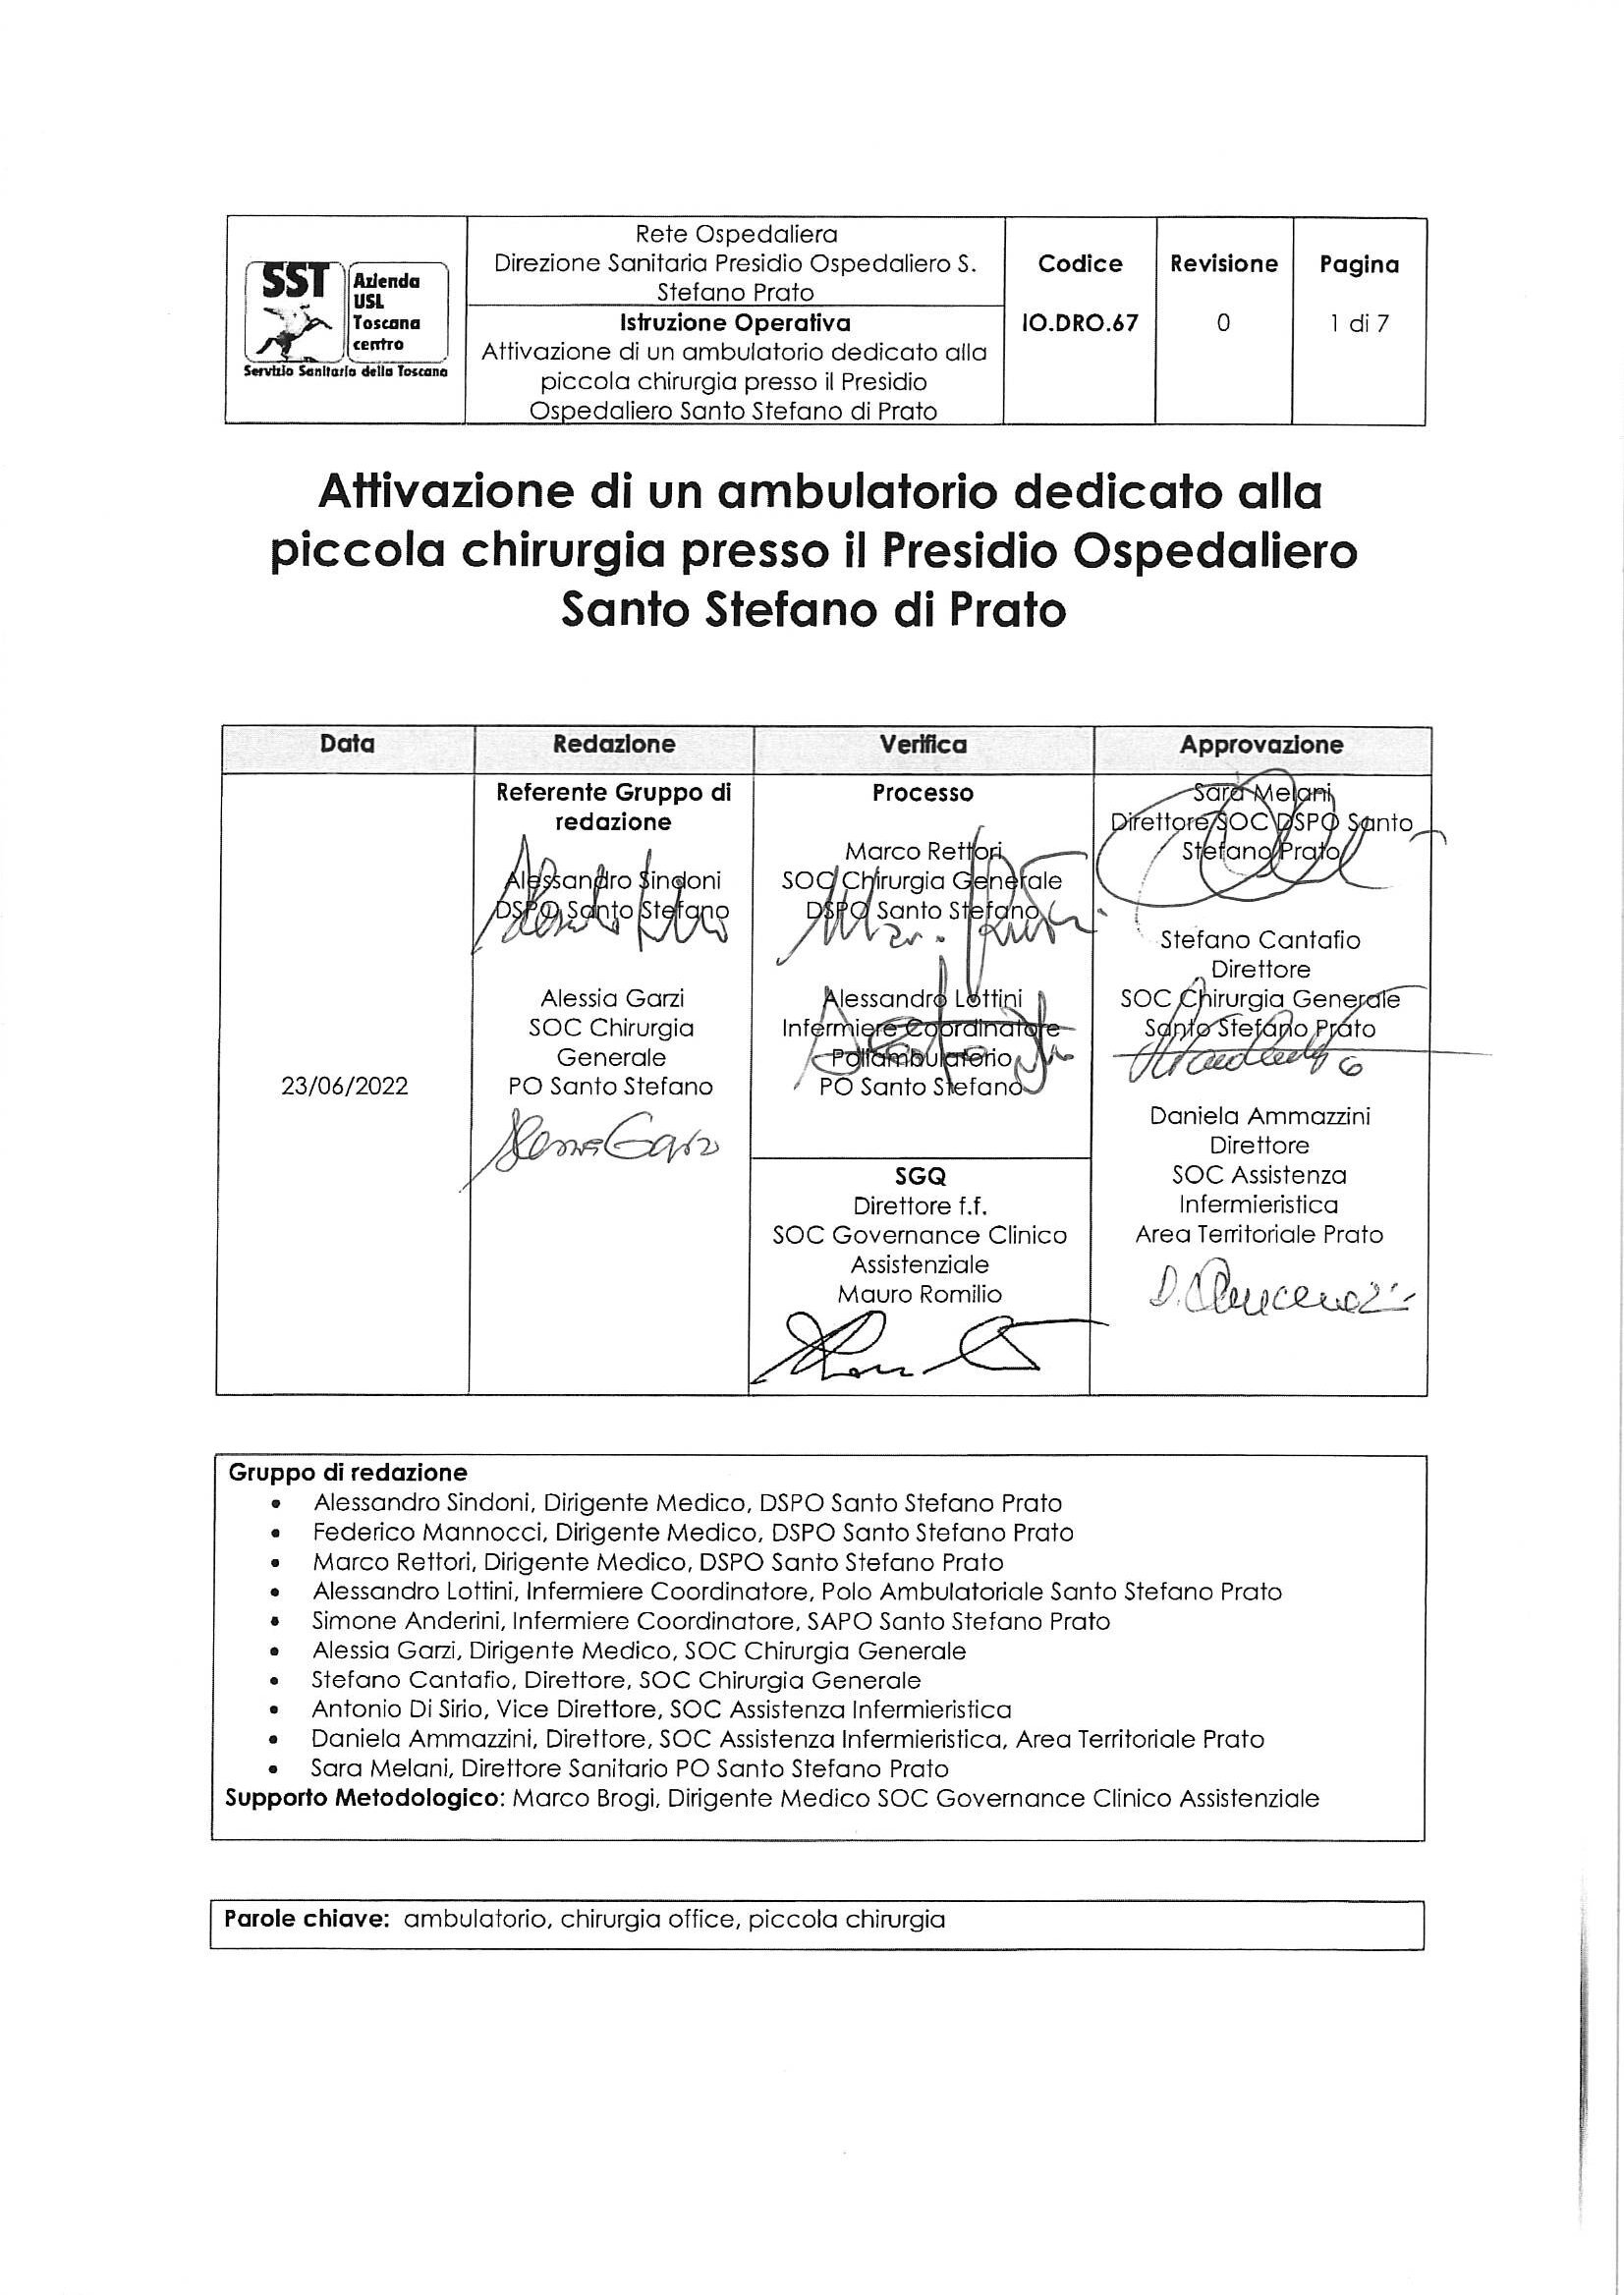 IO.DRO.67: Attivazione di un ambulatorio dedicato alla piccola chirurgia presso il Presidio Ospedaliero Santo Stefano di Prato